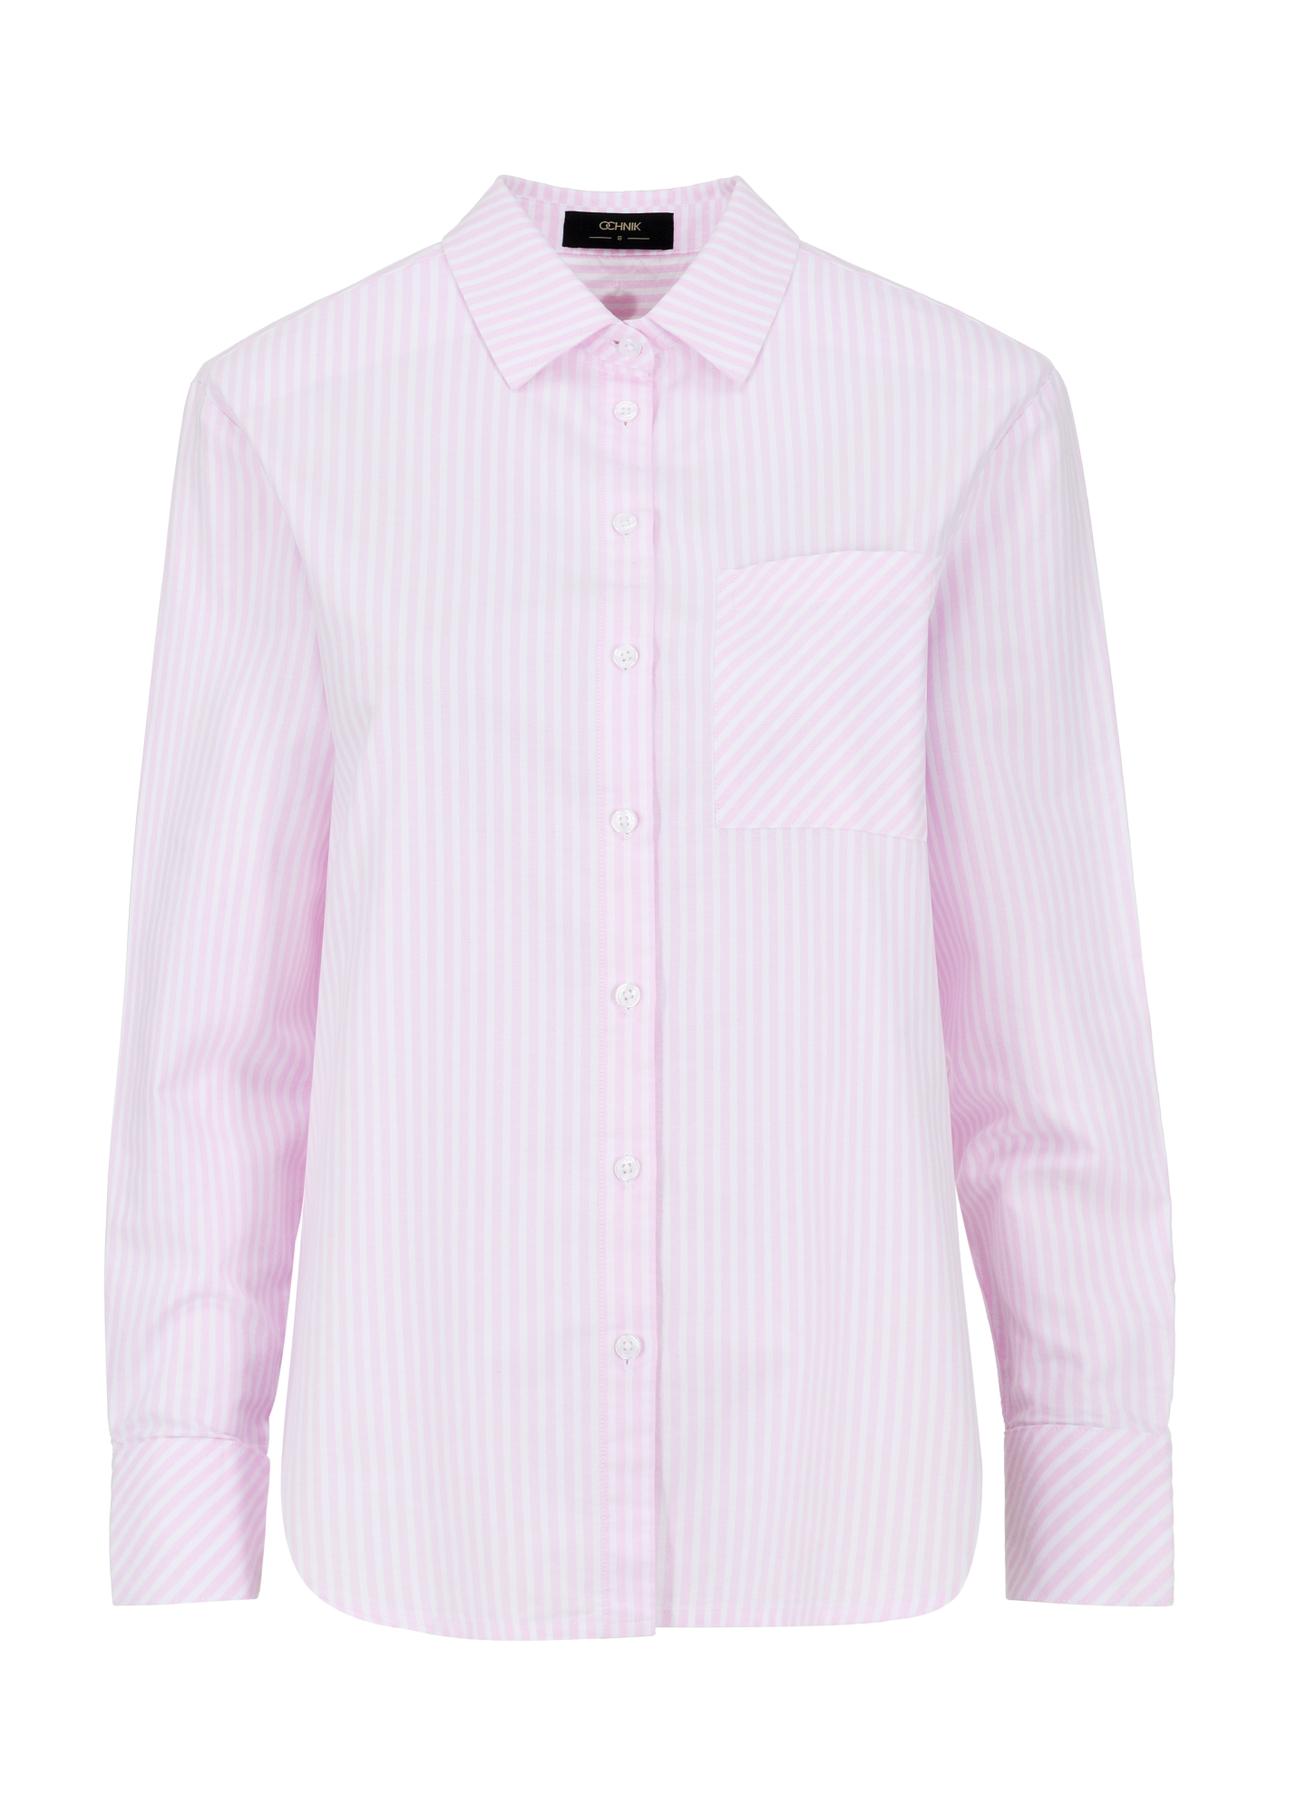 Różowa koszula w paski damska KOSDT-0156-34(W24)